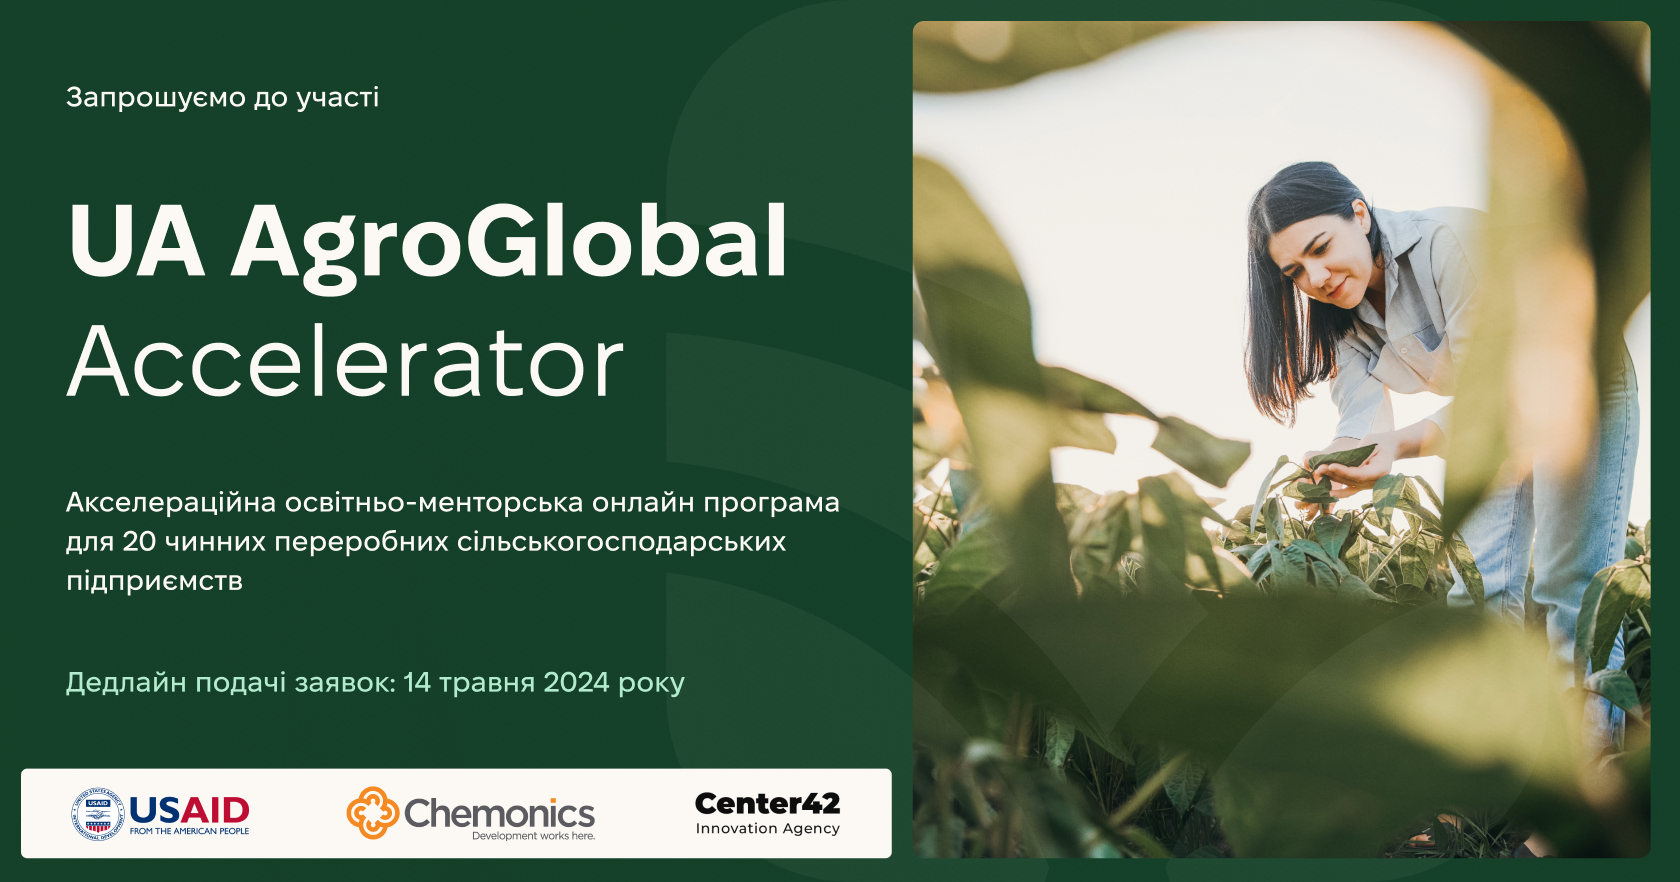 Center42 запрошує виробників продуктів, аграріїв-переробників взяти участь в освітньо-менторській програмі UA AgroGlobal Accelerator!